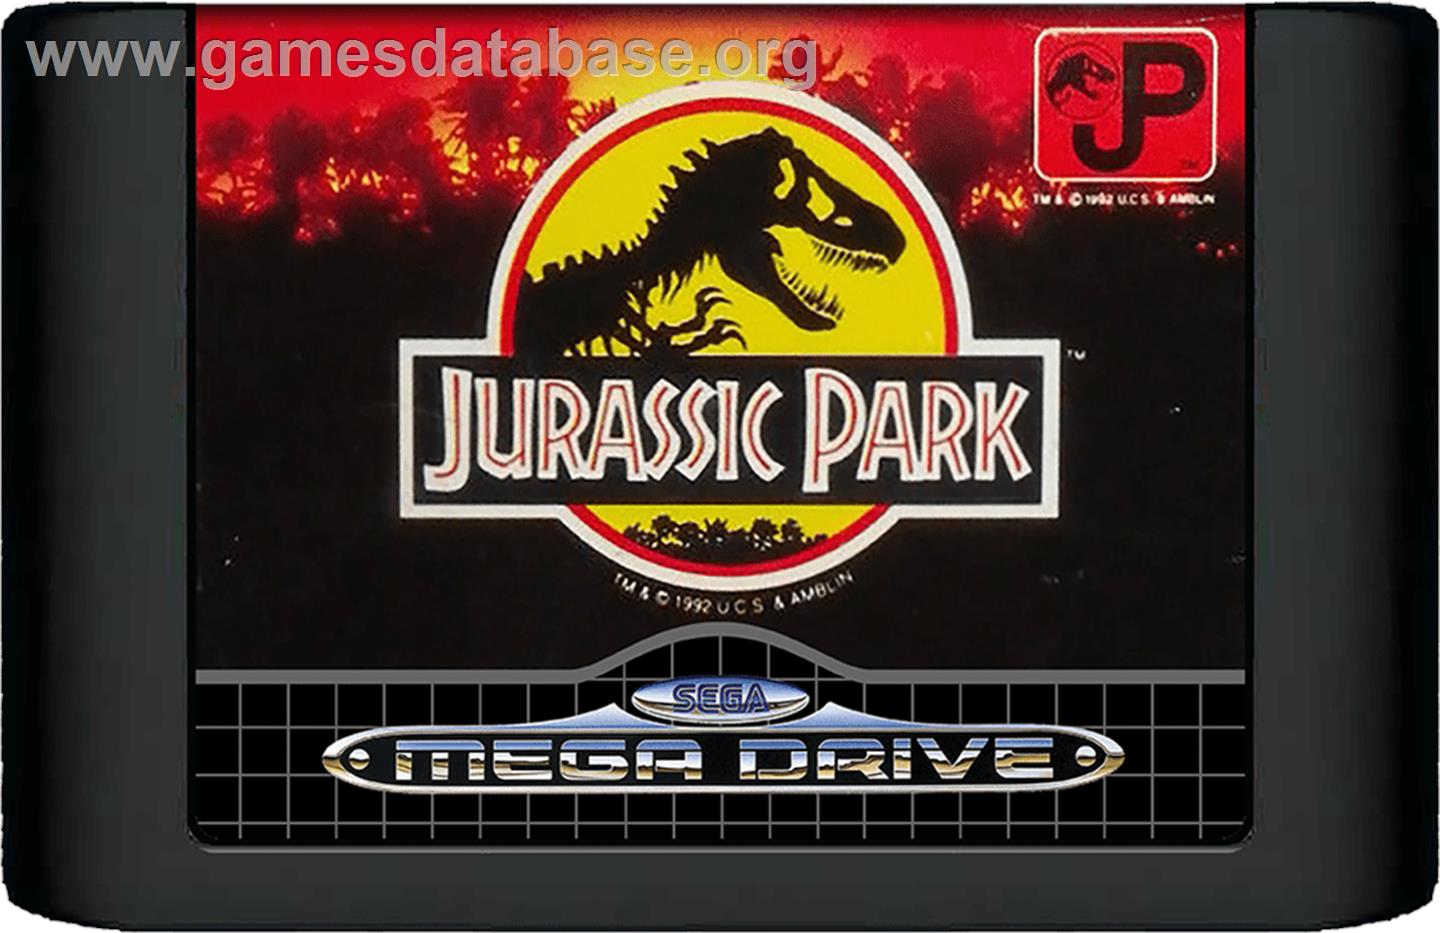 Jurassic Park - Sega Genesis - Artwork - Cartridge